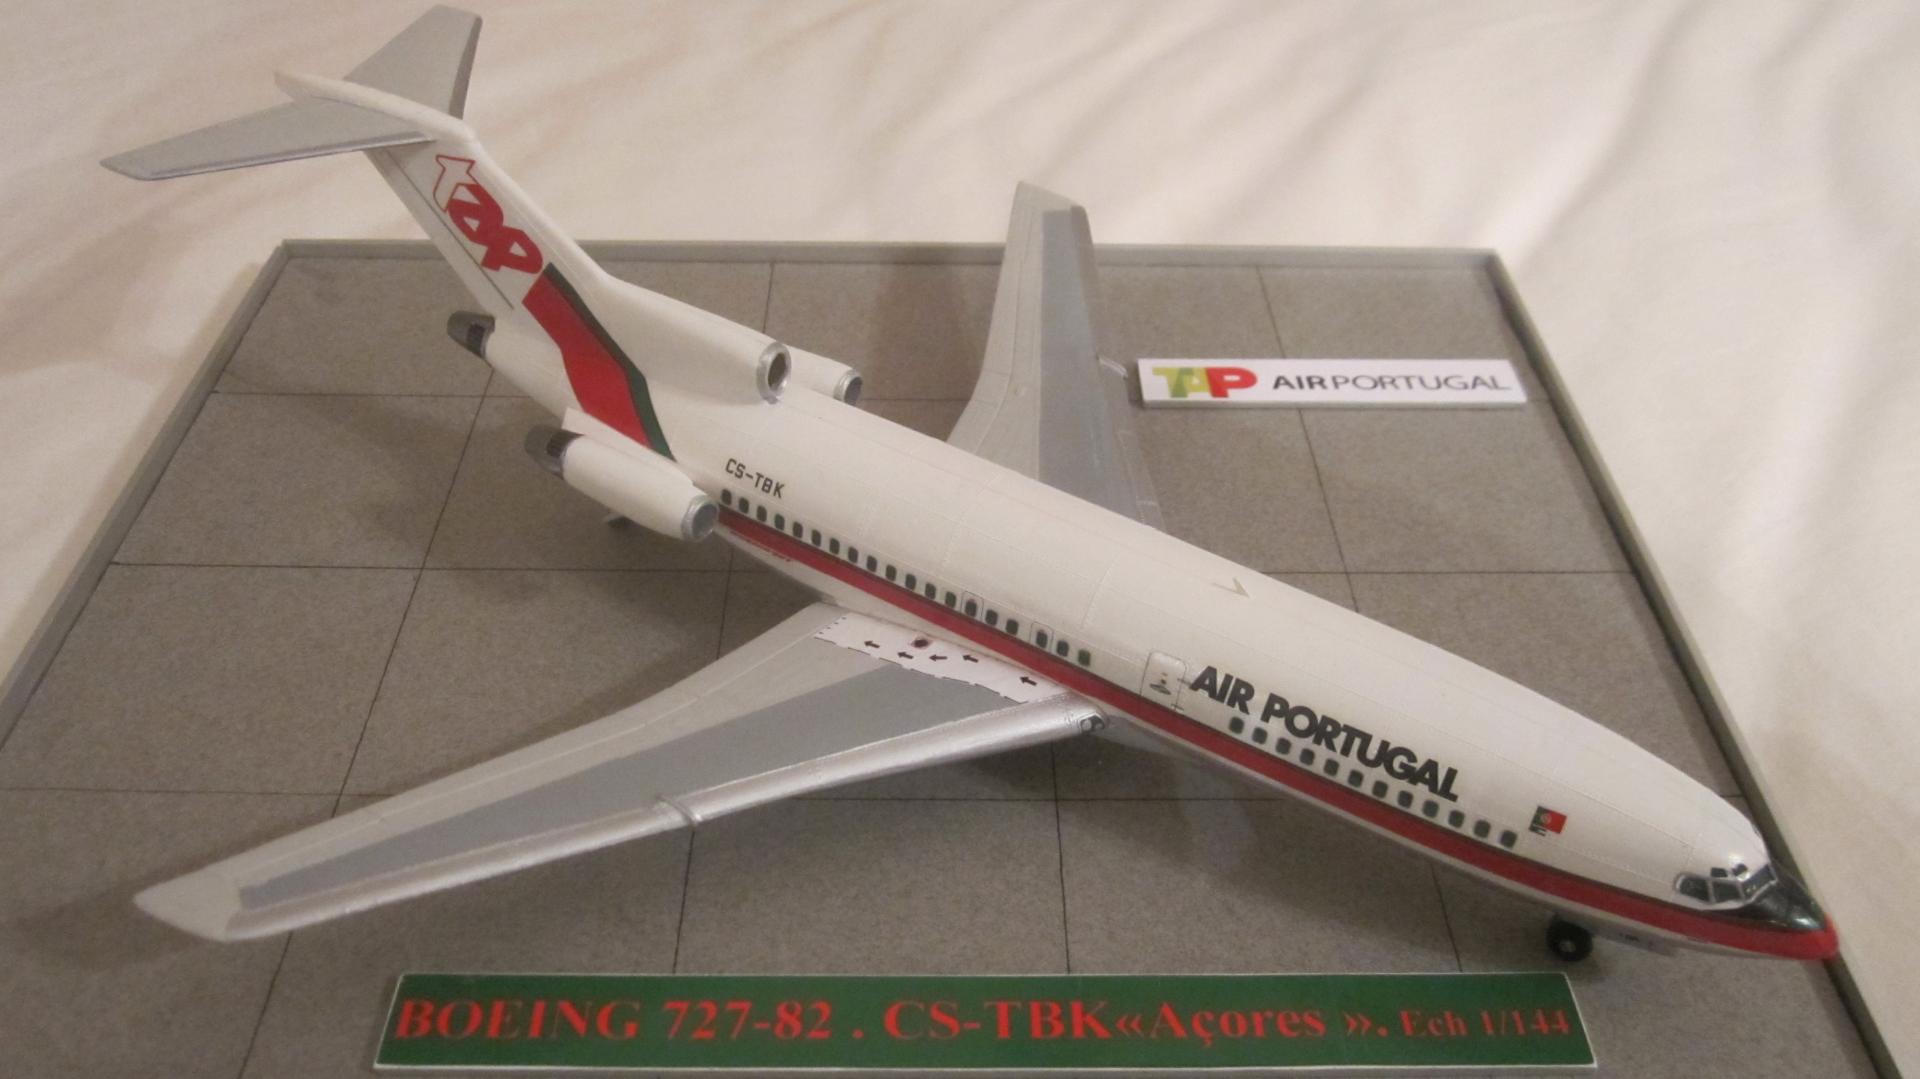 BOEING 727-82 AIR PORTUGAL